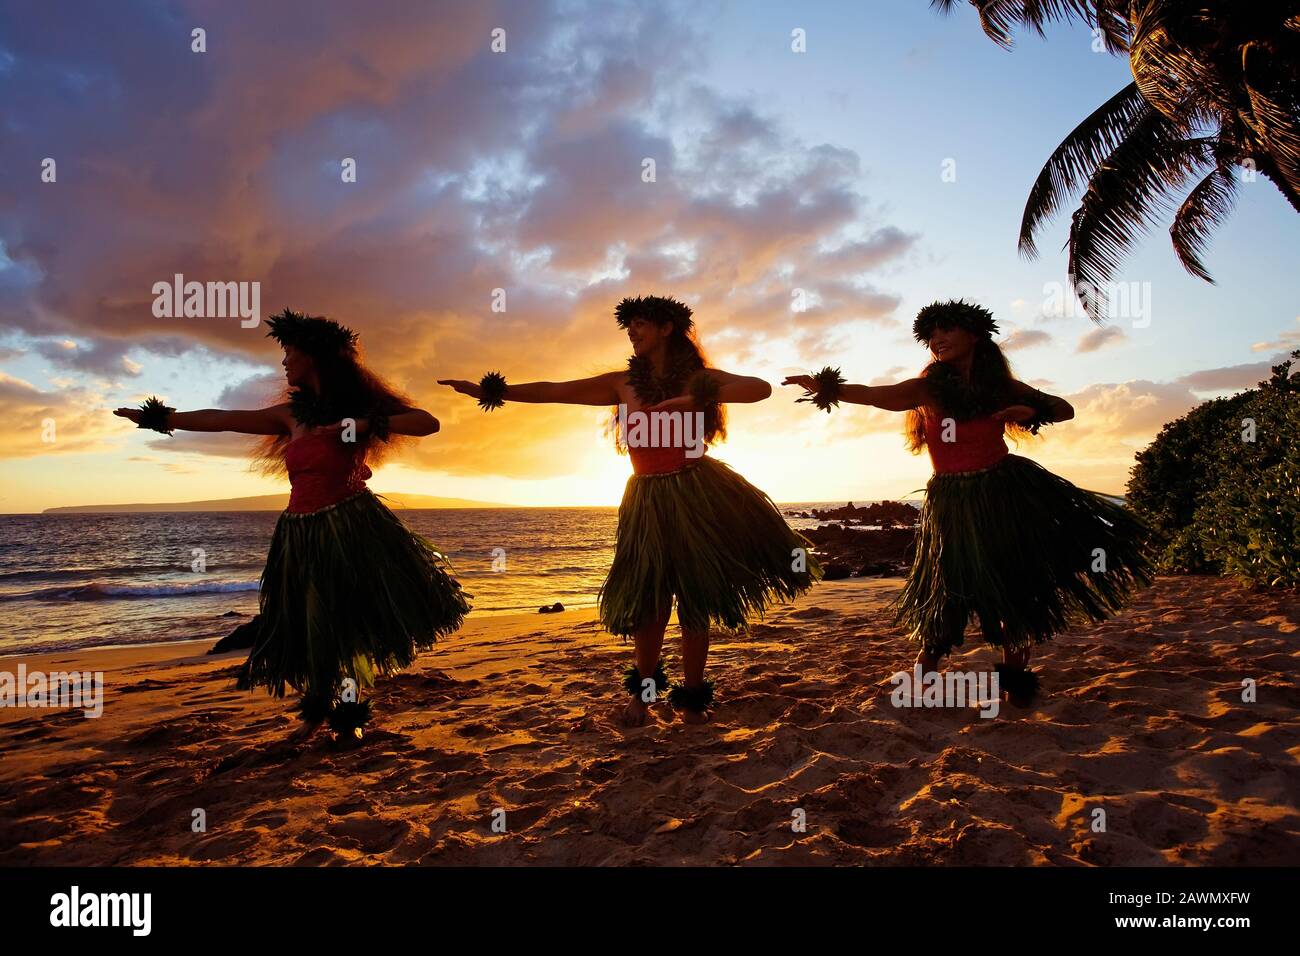 Three hula dancers at sunset at White Rock, Palauea, Maui, Hawaii. Stock Photo